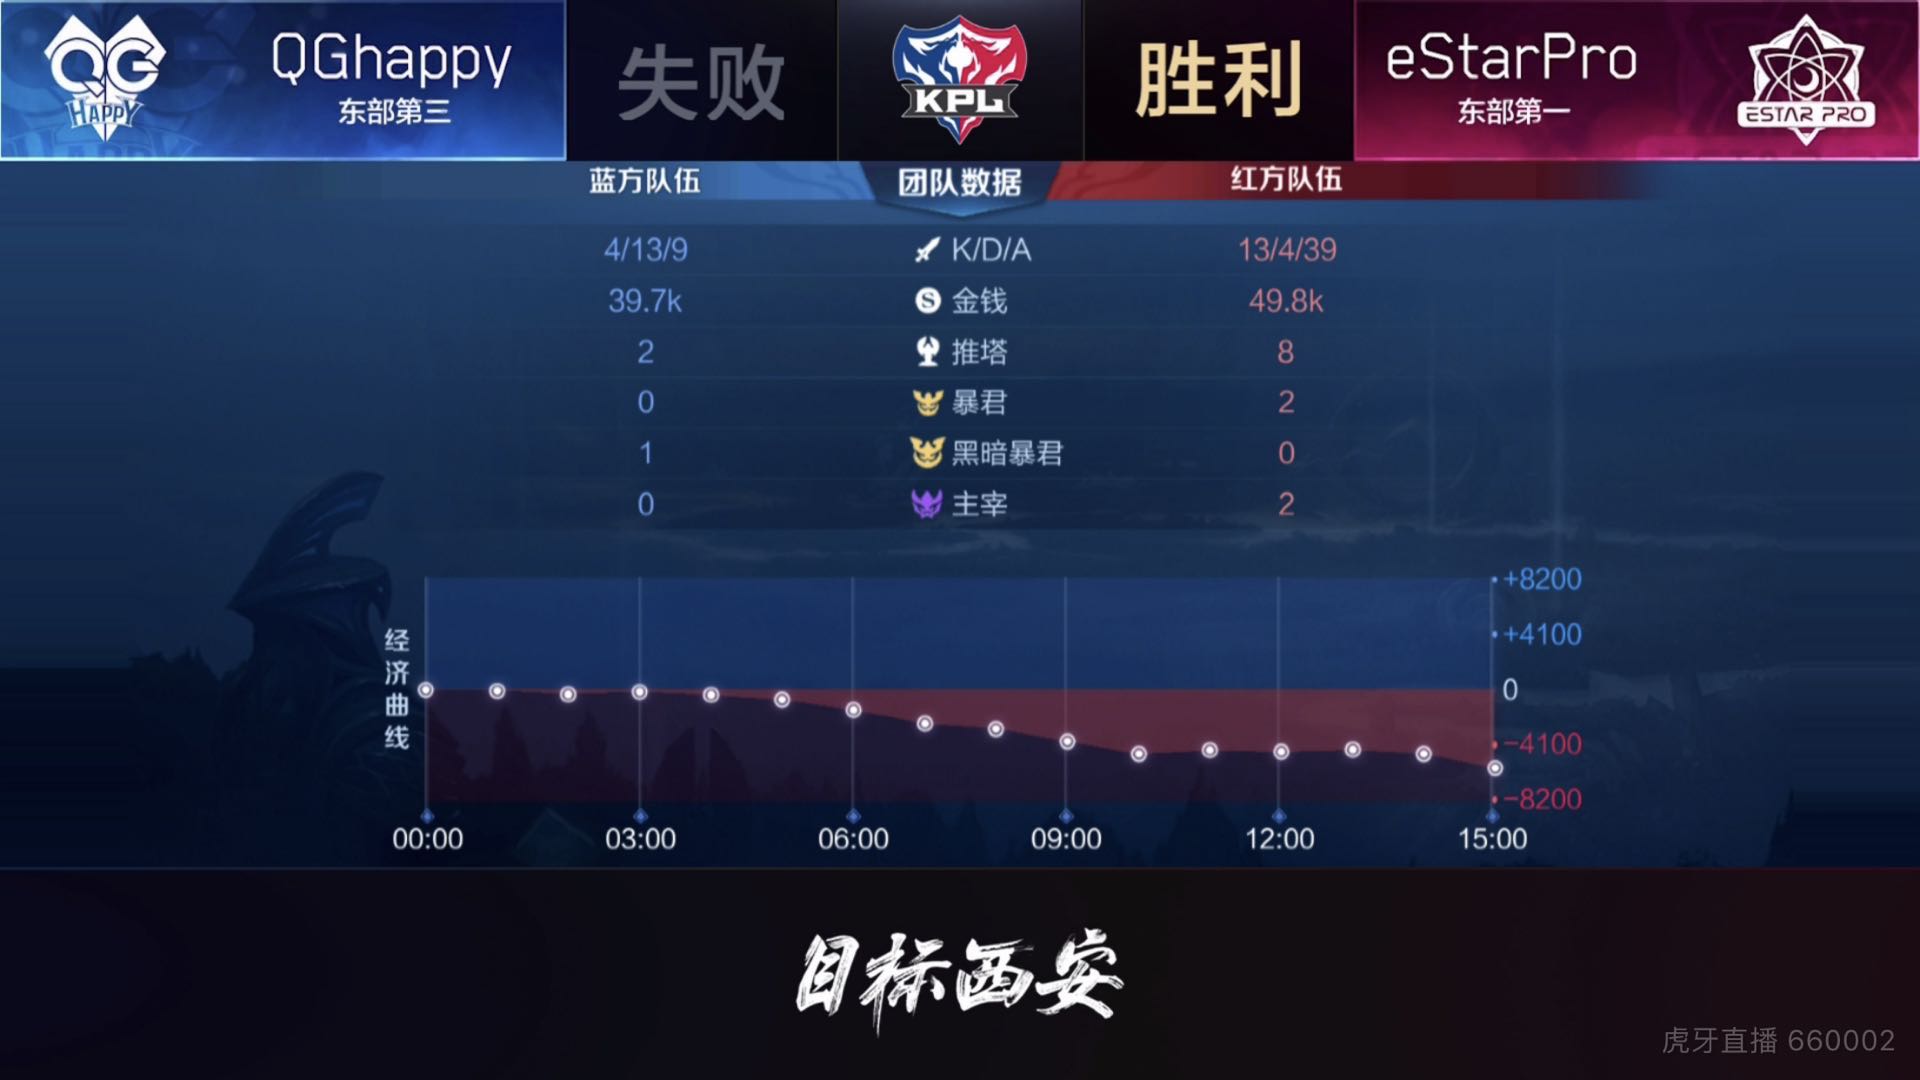 [战报] eStarPro四比一战胜QGhappy 成功进入下一轮！